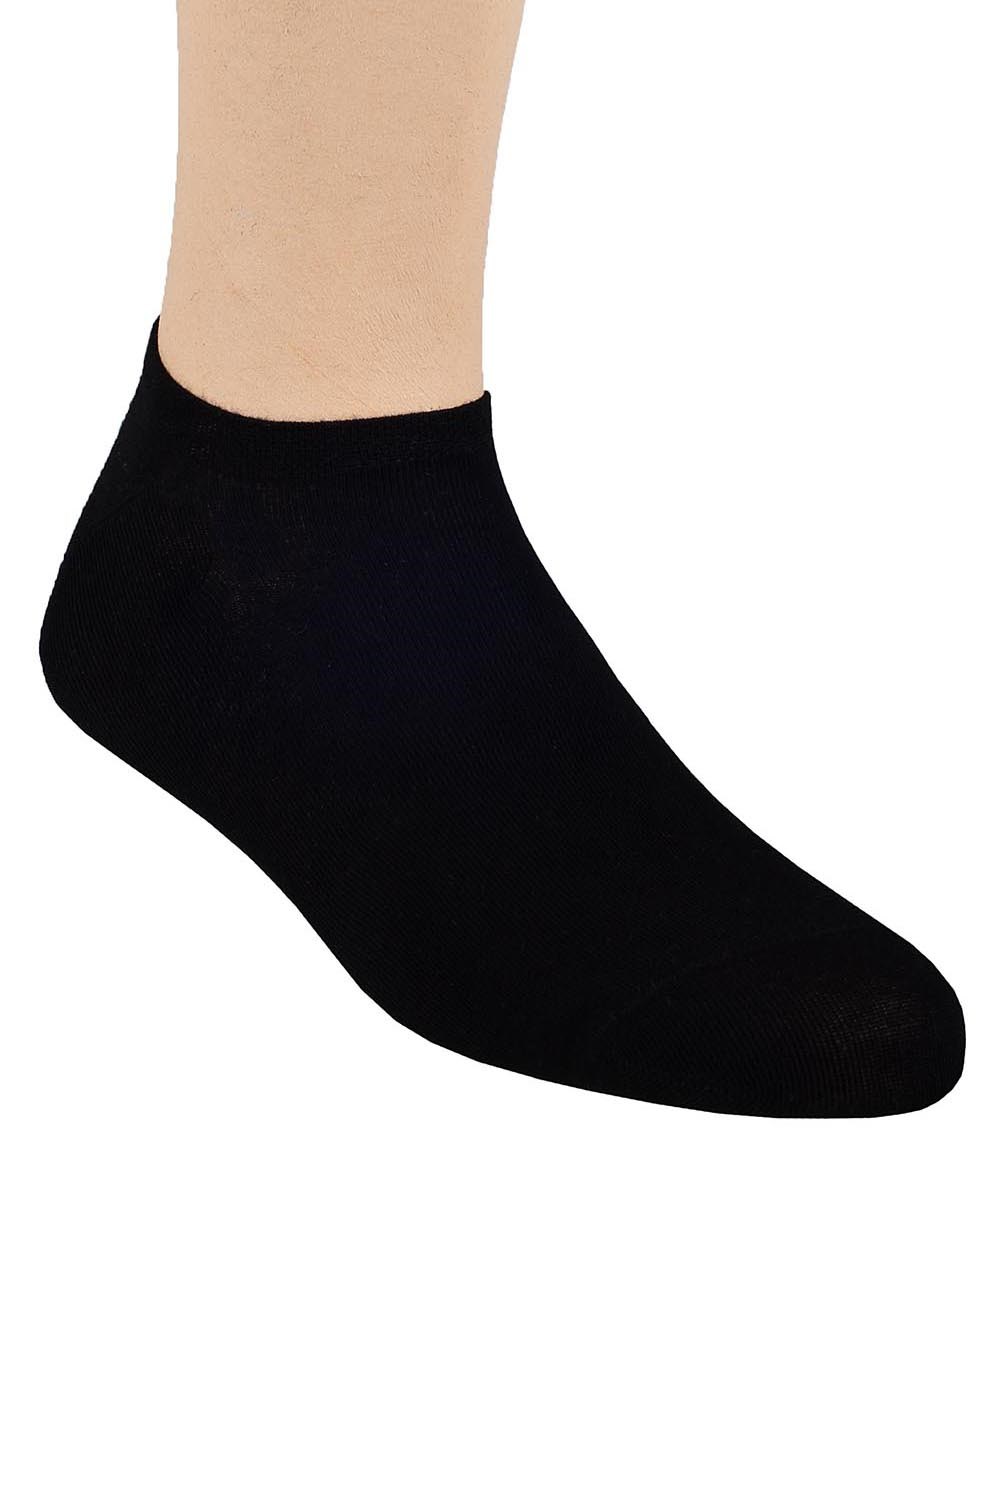 Ponožky nízké Steven 007 - Výprodej